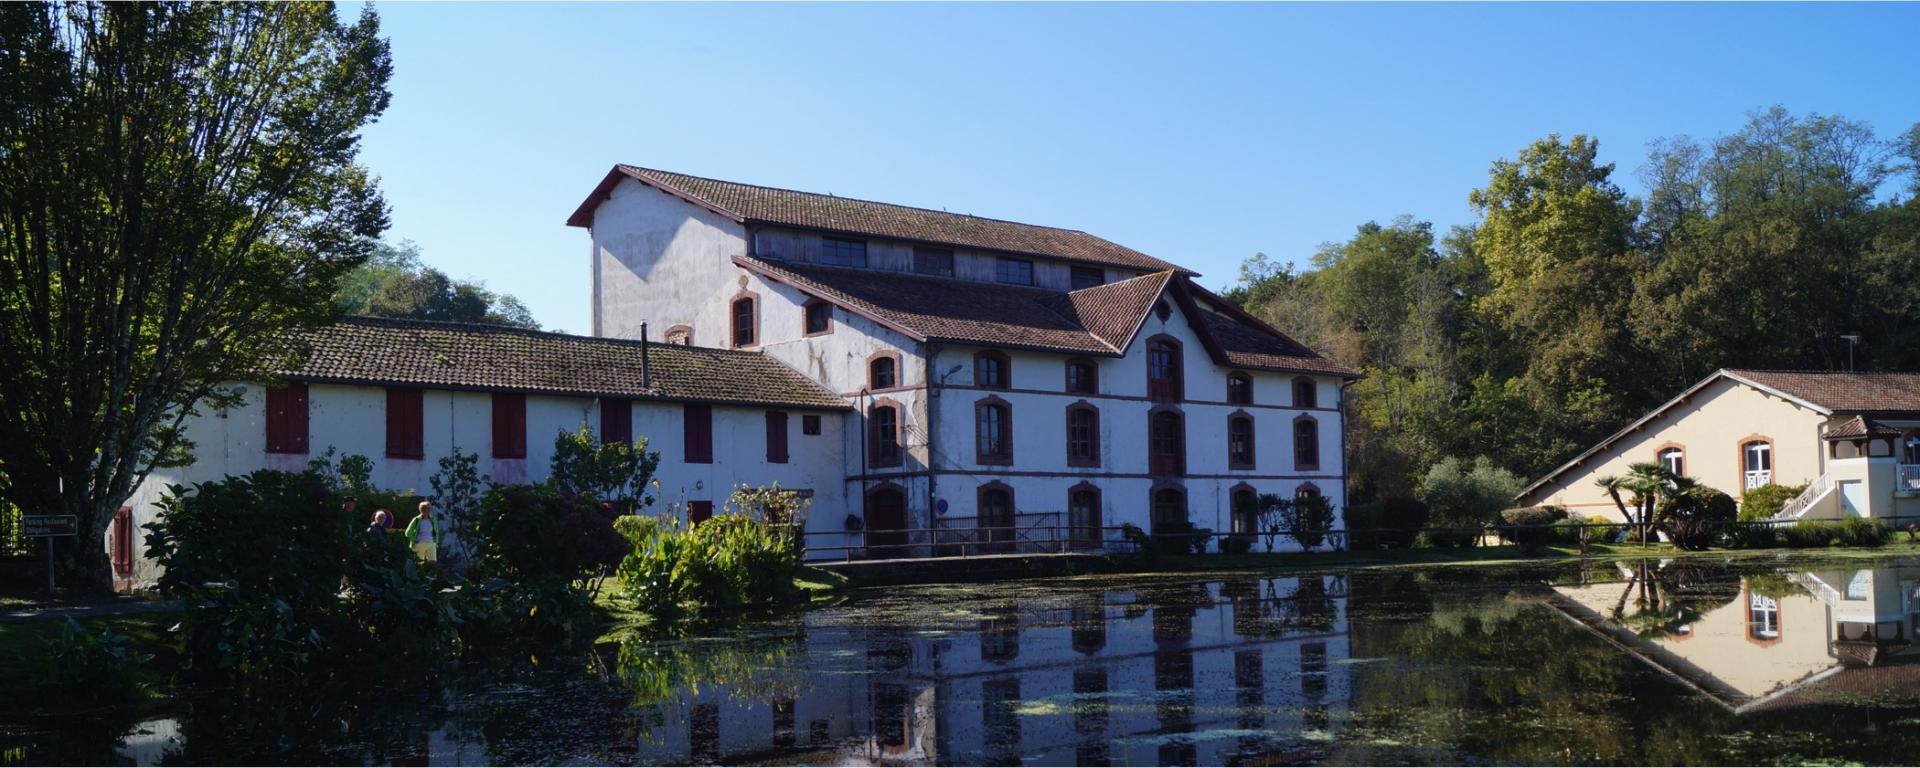 Maison des arts dans le moulin de Poustagnacq à Saint-Paul-lès-Dax (40)